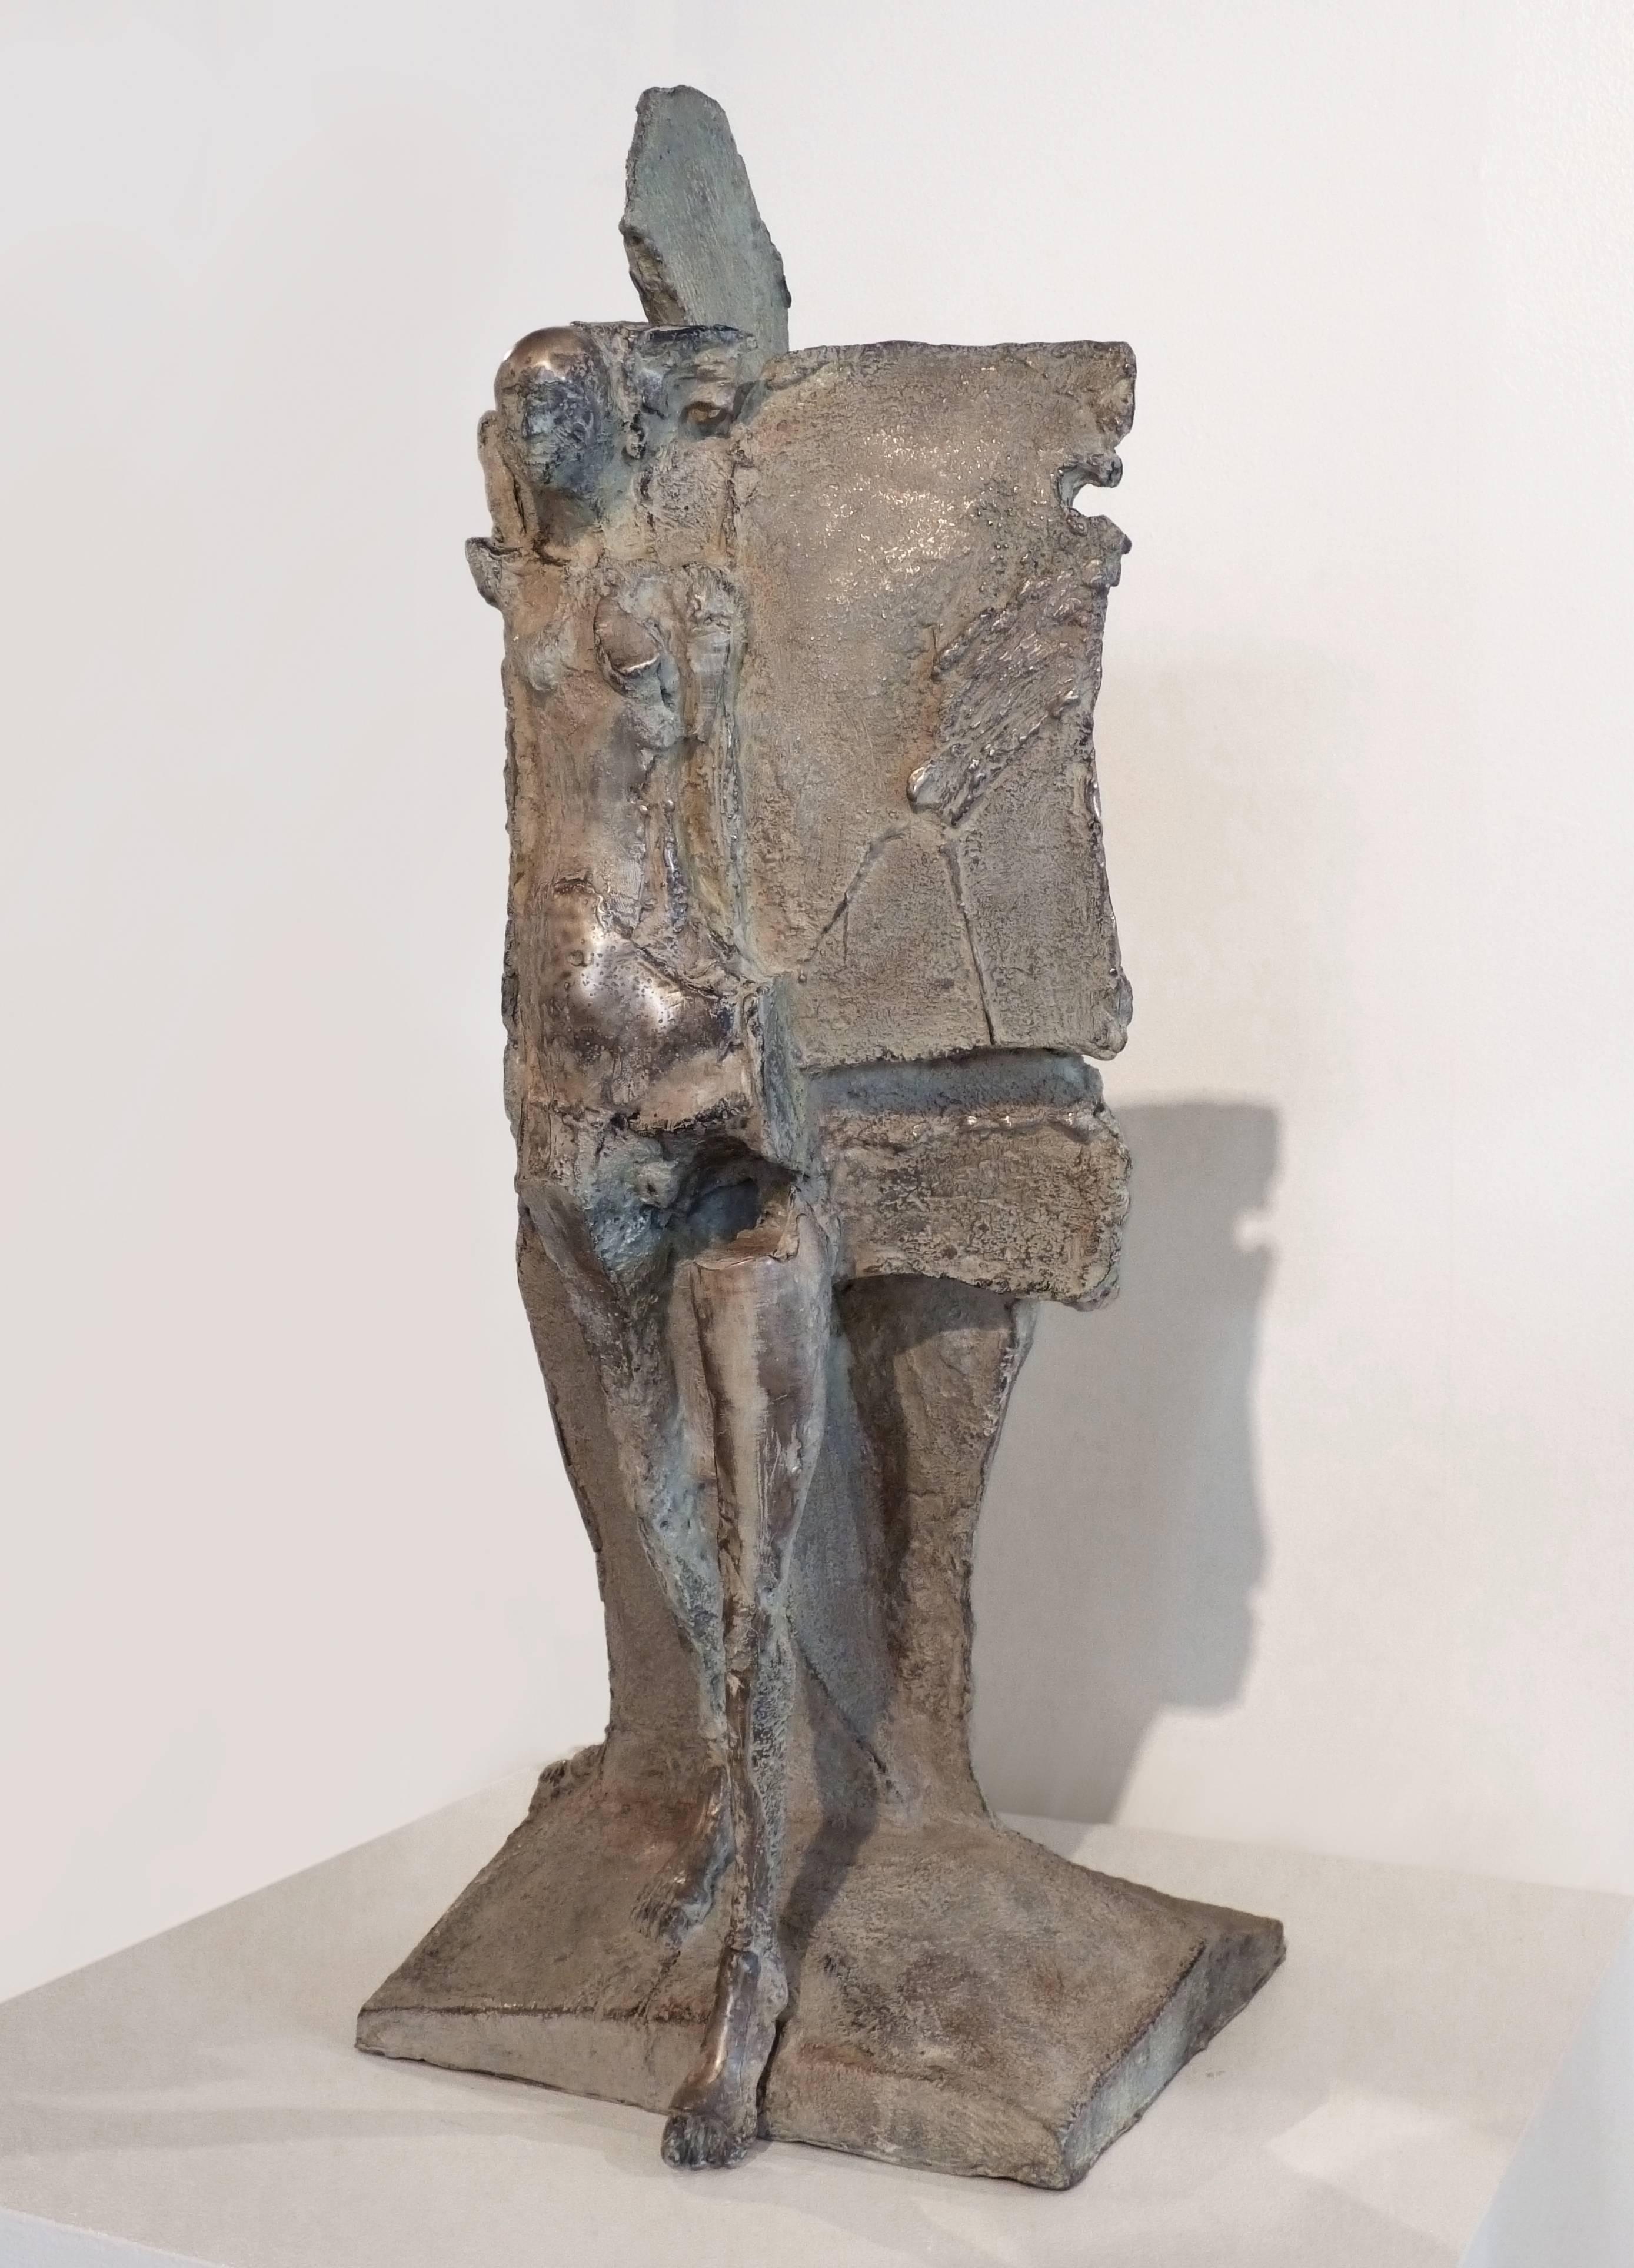 Emerging - Sculpture by John Denning